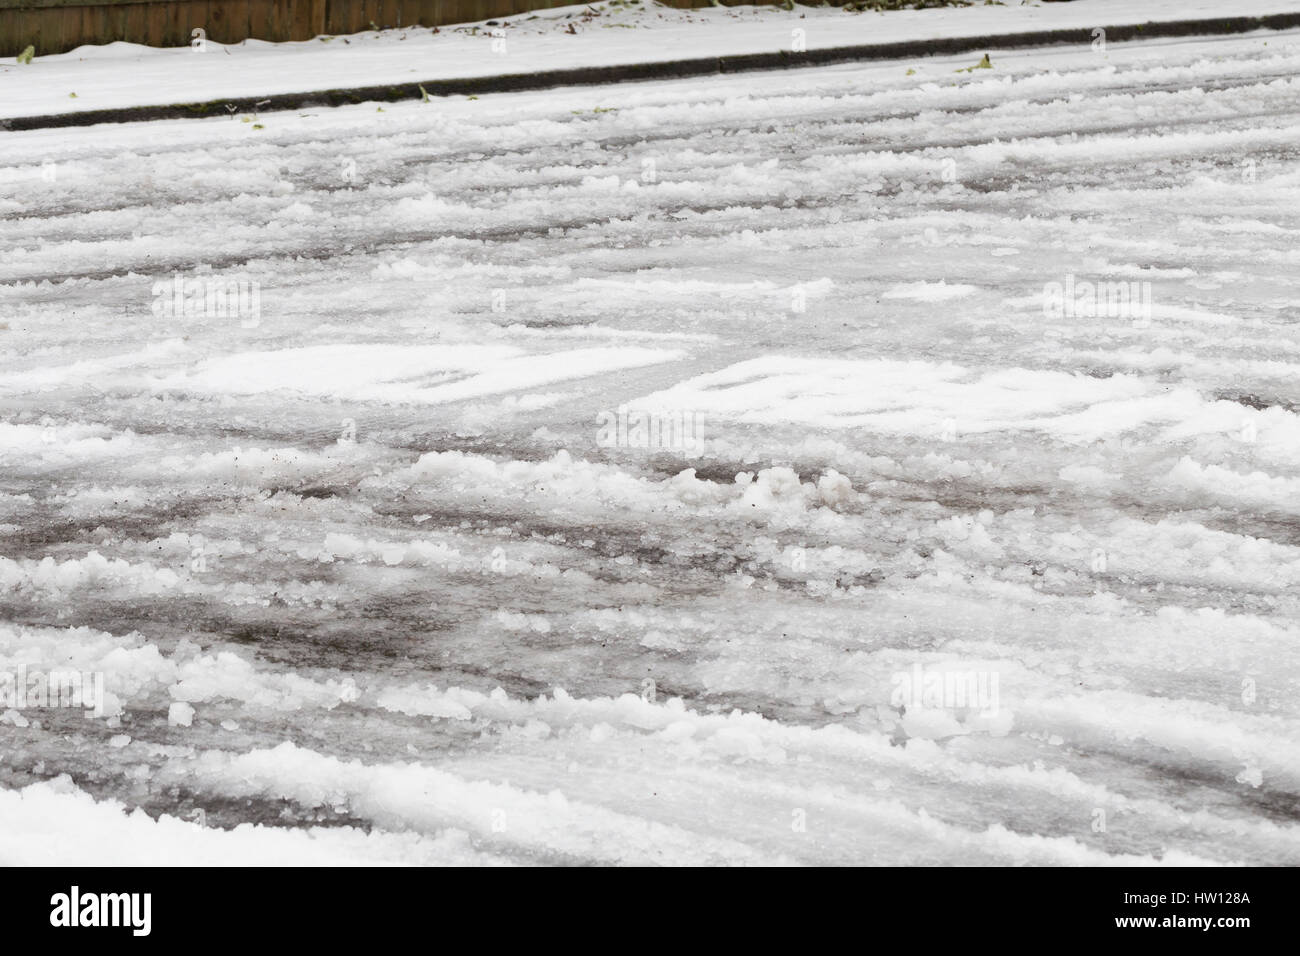 La pluie verglaçante très dangereux sur les routes couvertes de neige pendant une tempête de glace en hiver à Eugene en Oregon. Banque D'Images